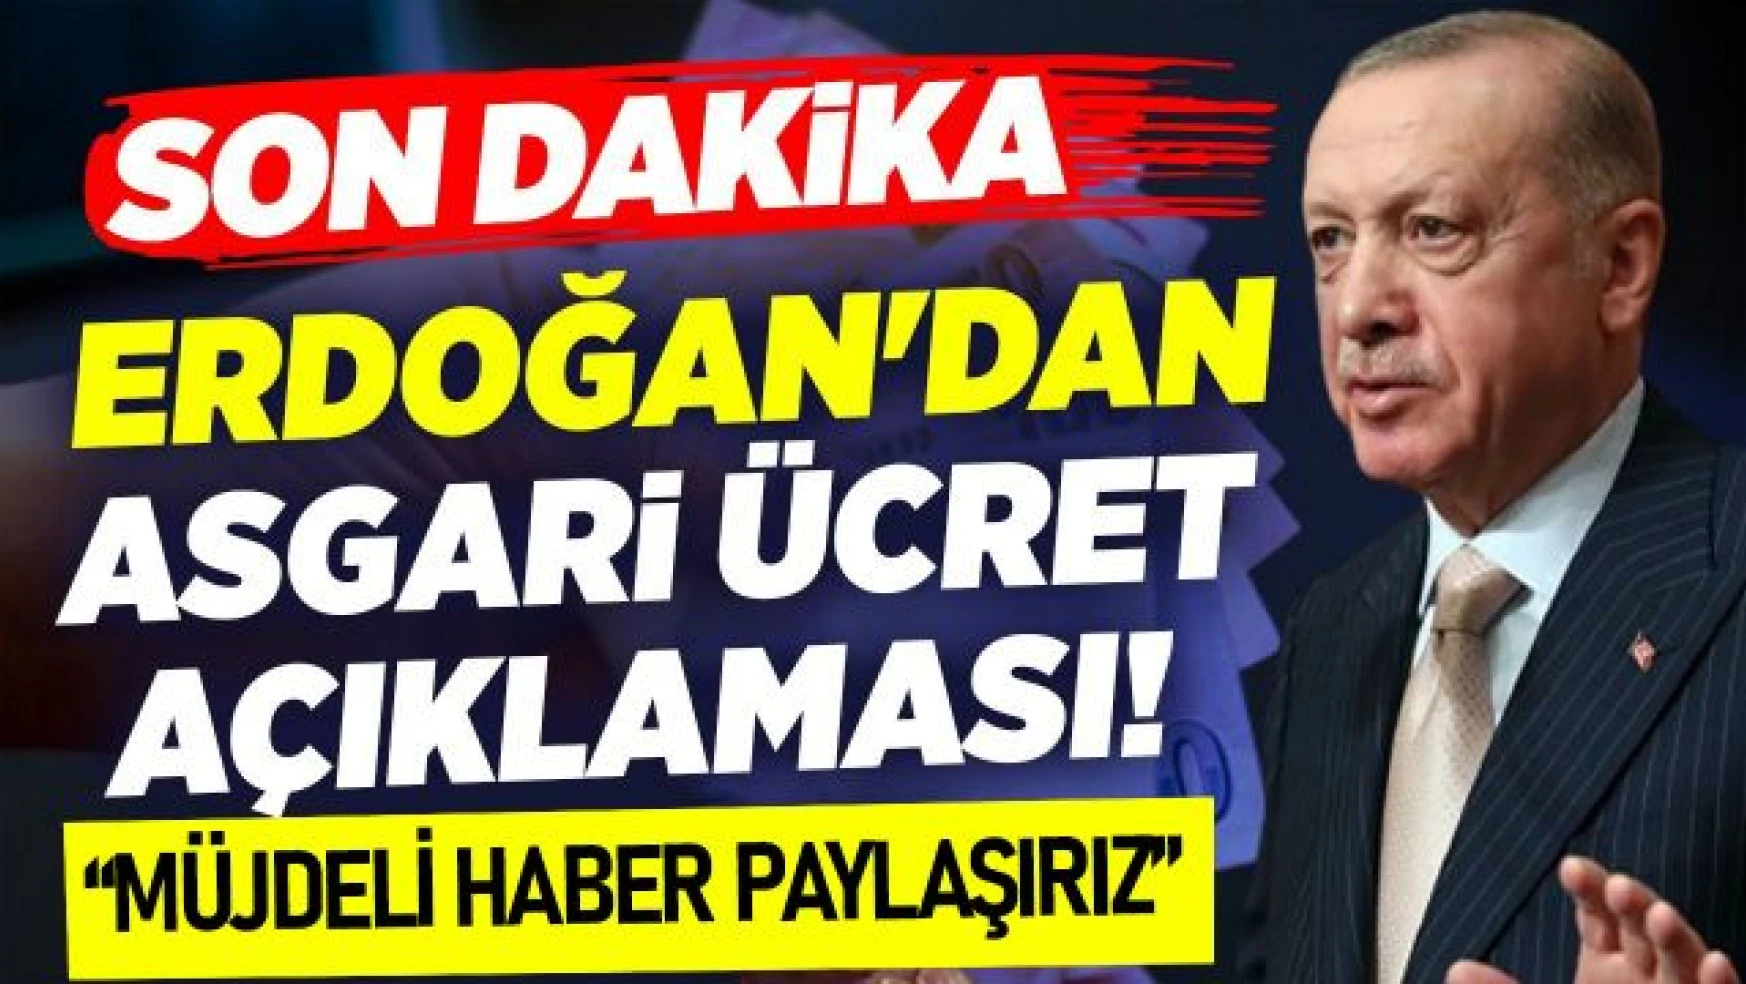 Erdoğan'dan asgari ücret açıklaması: İnşallah müjdeli haberi paylaşırız